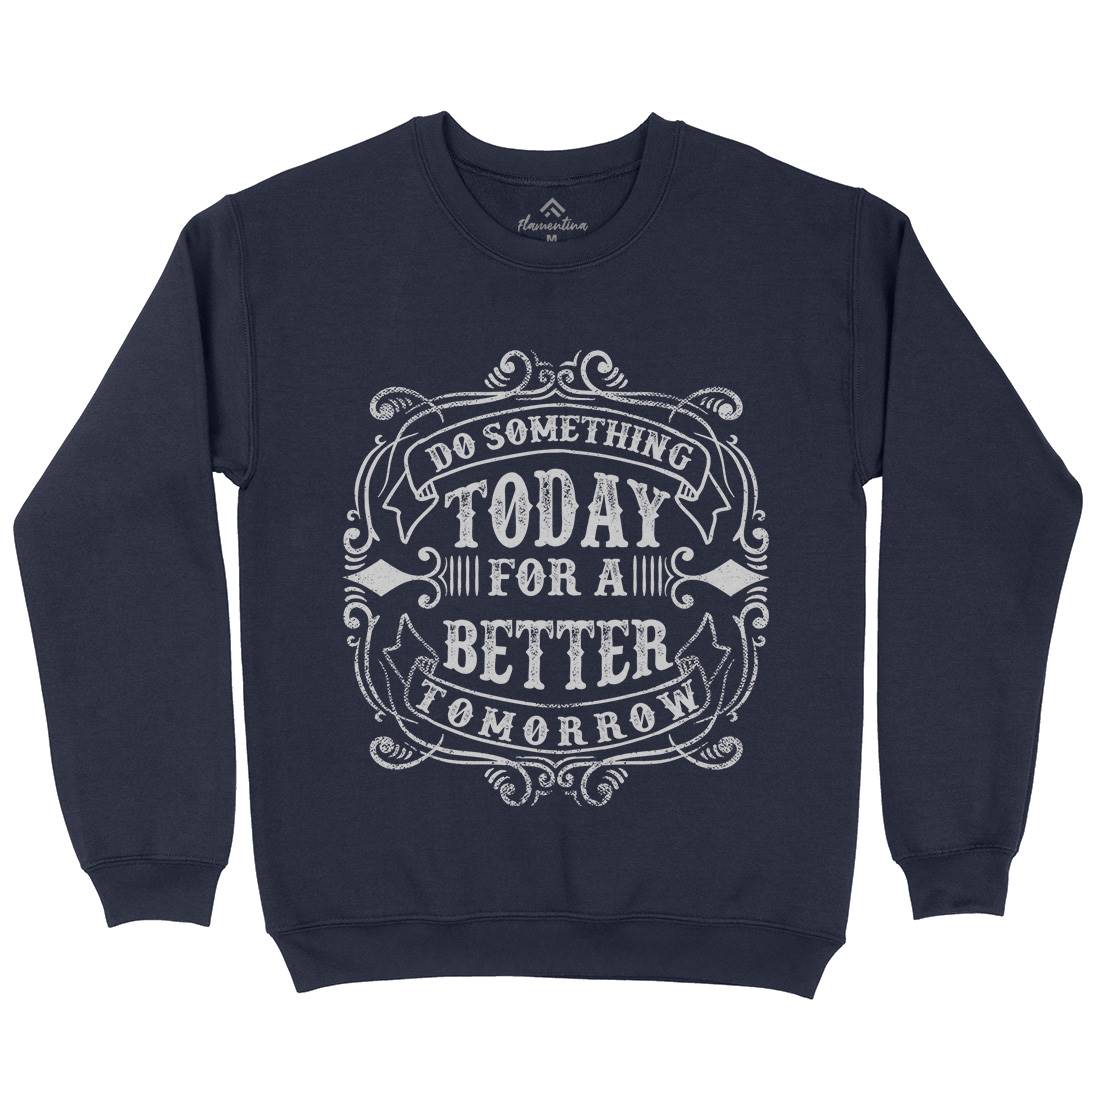 Do Something Today Kids Crew Neck Sweatshirt Quotes C923